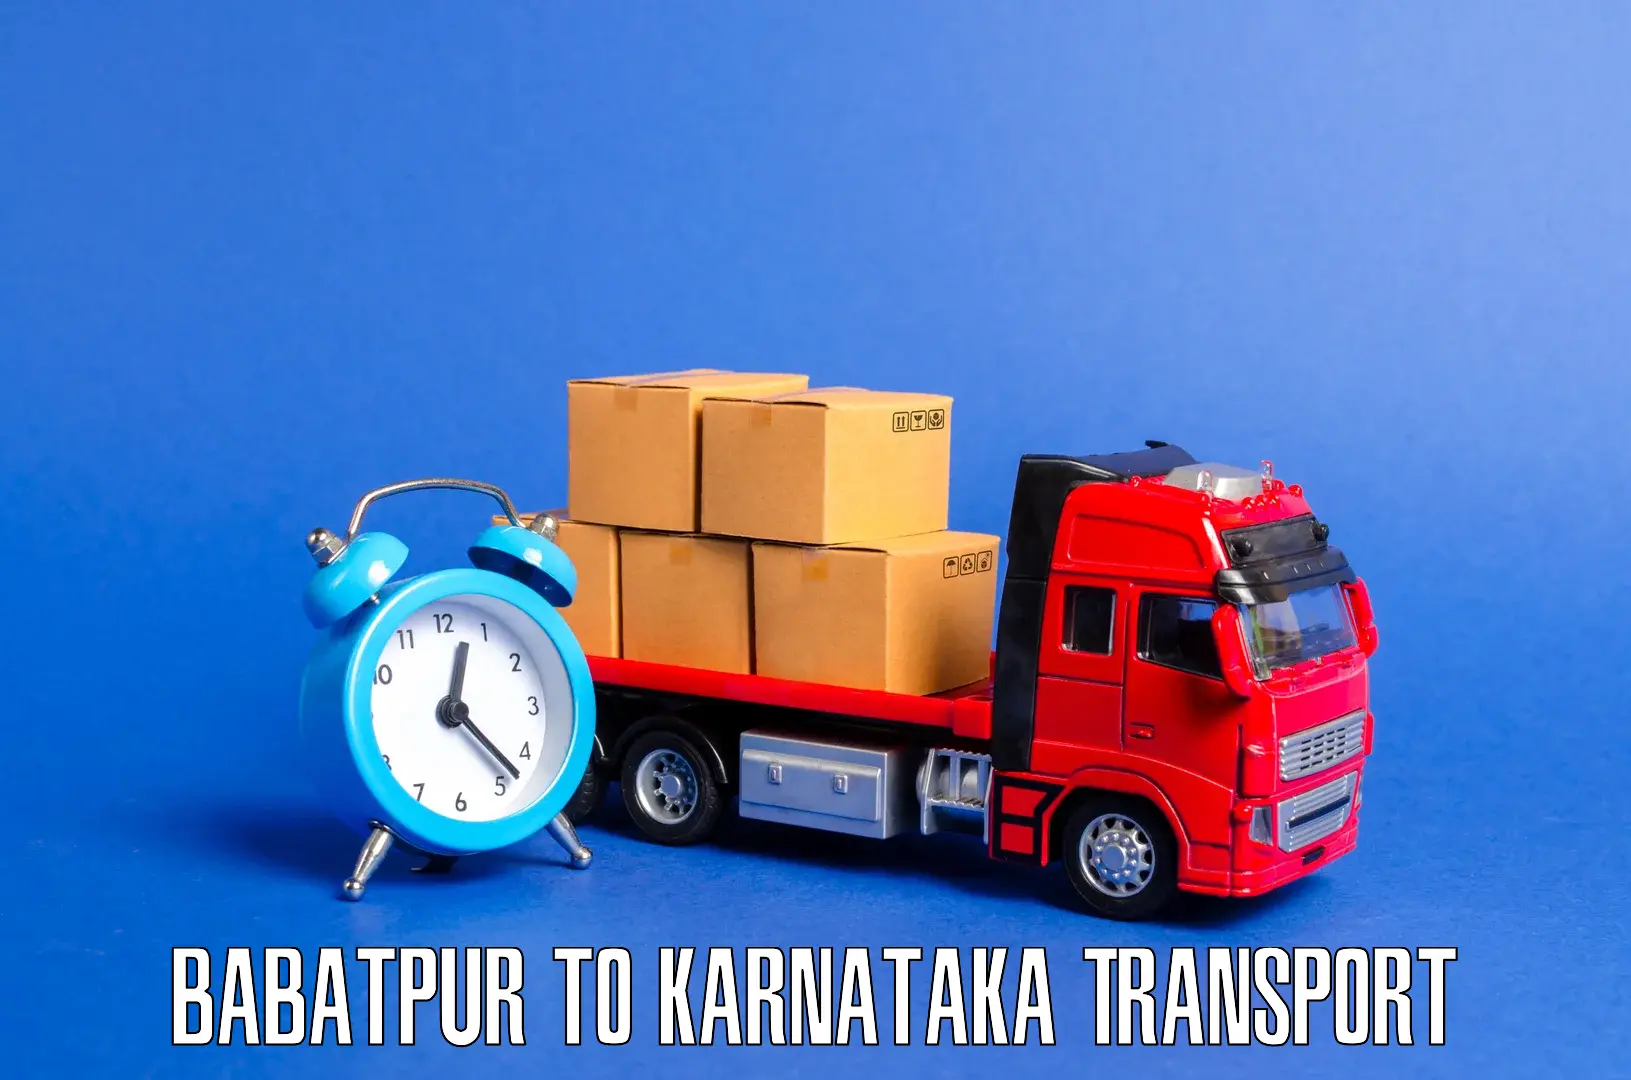 Online transport booking Babatpur to Karnataka